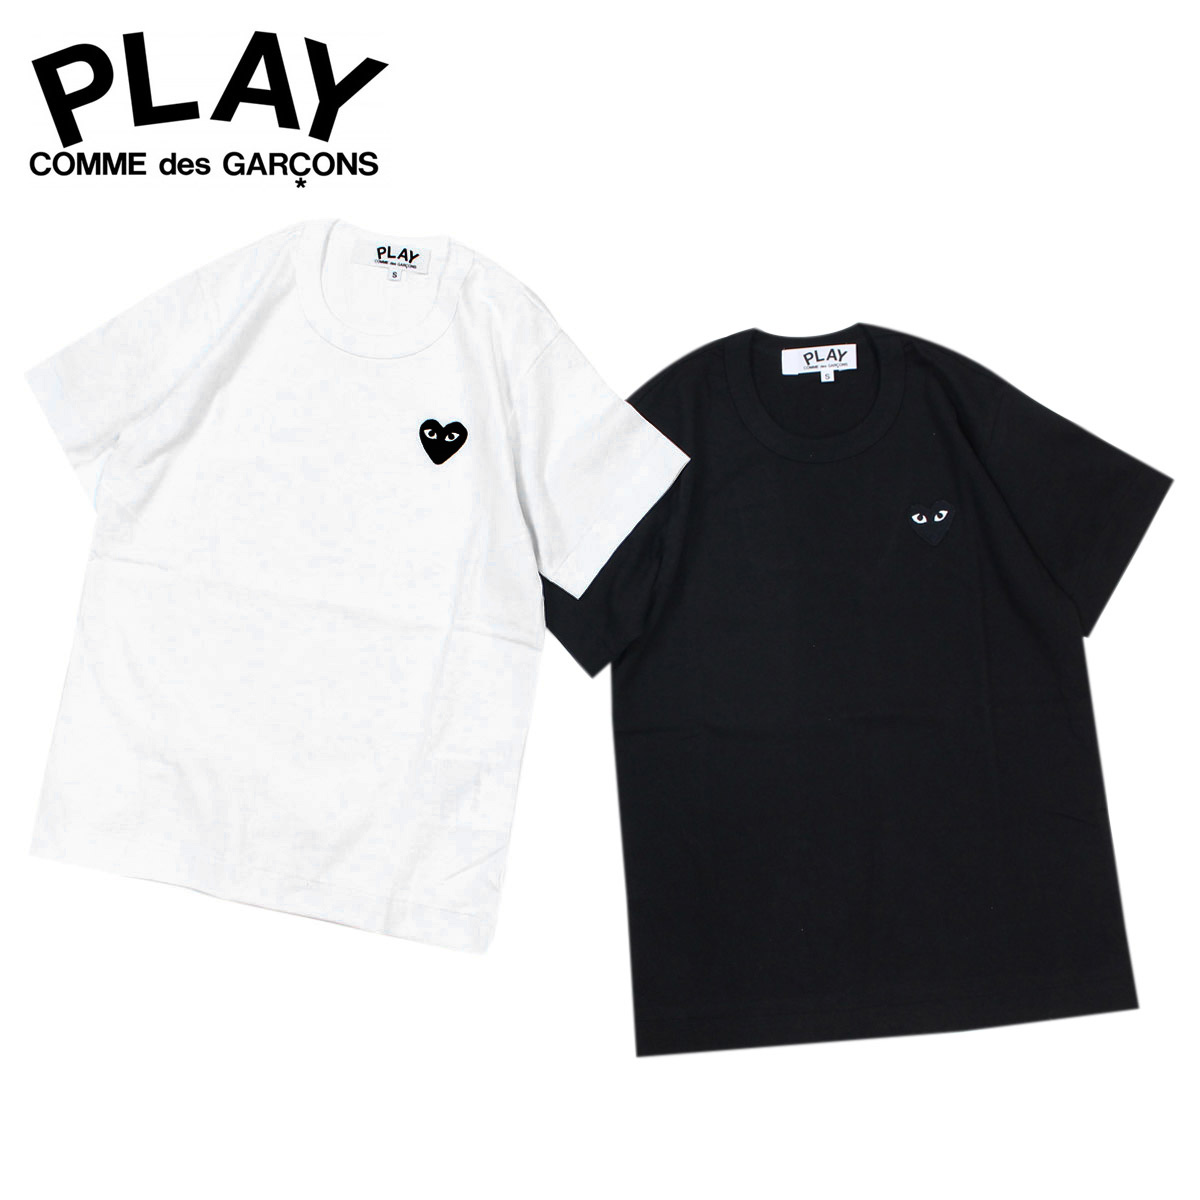 cdg play shirt black